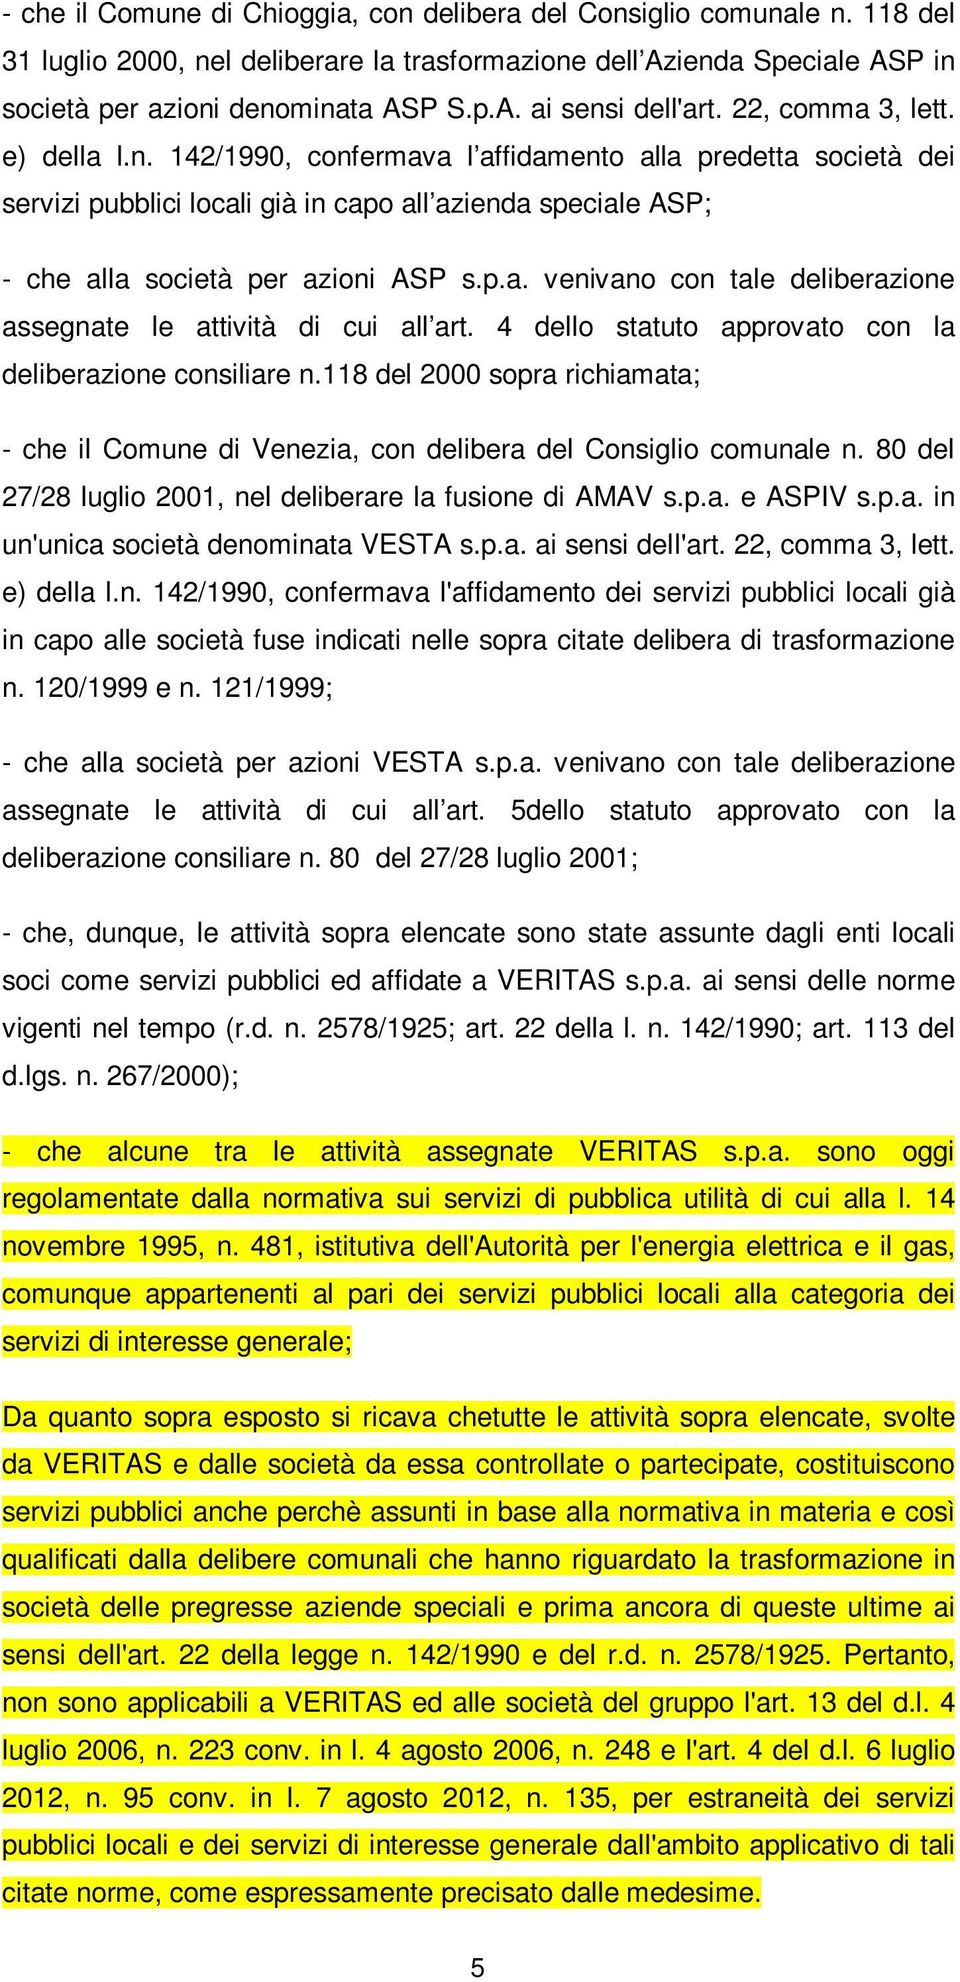 4 dello statuto approvato con la deliberazione consiliare n.118 del 2000 sopra richiamata; - che il Comune di Venezia, con delibera del Consiglio comunale n.